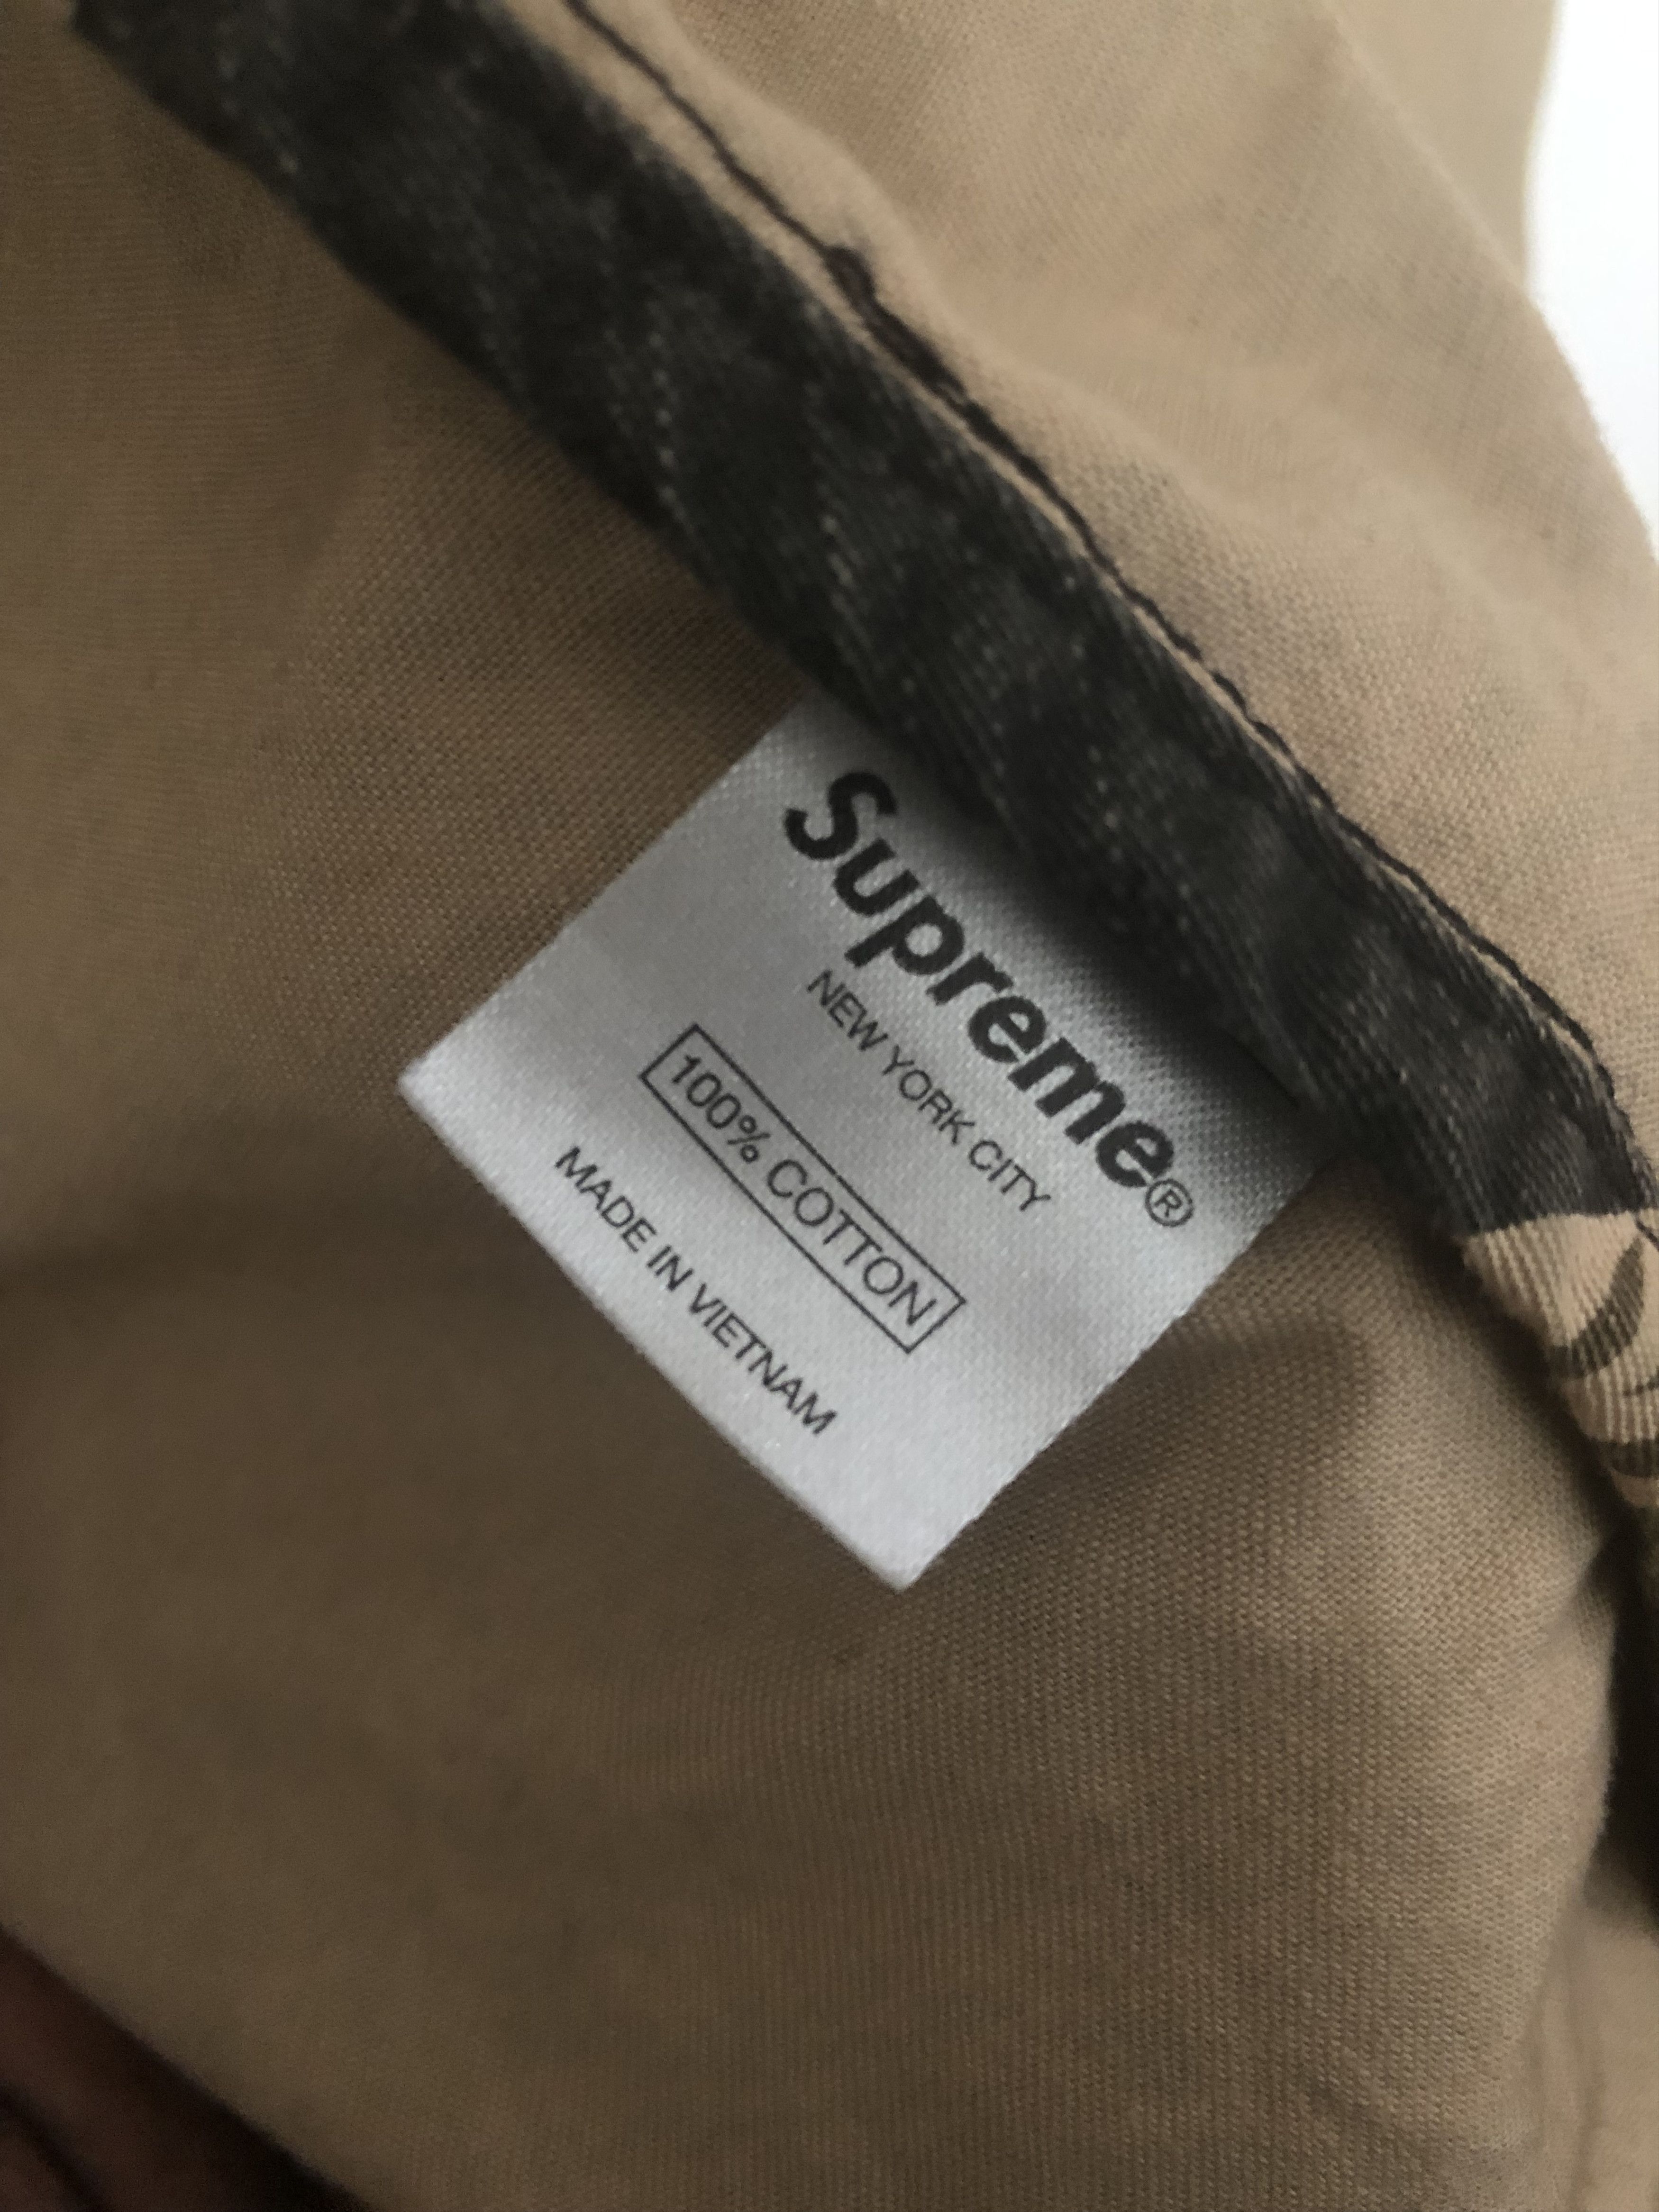 Supreme Supreme Tiger Camo Jacket Size US XL / EU 56 / 4 - 4 Preview